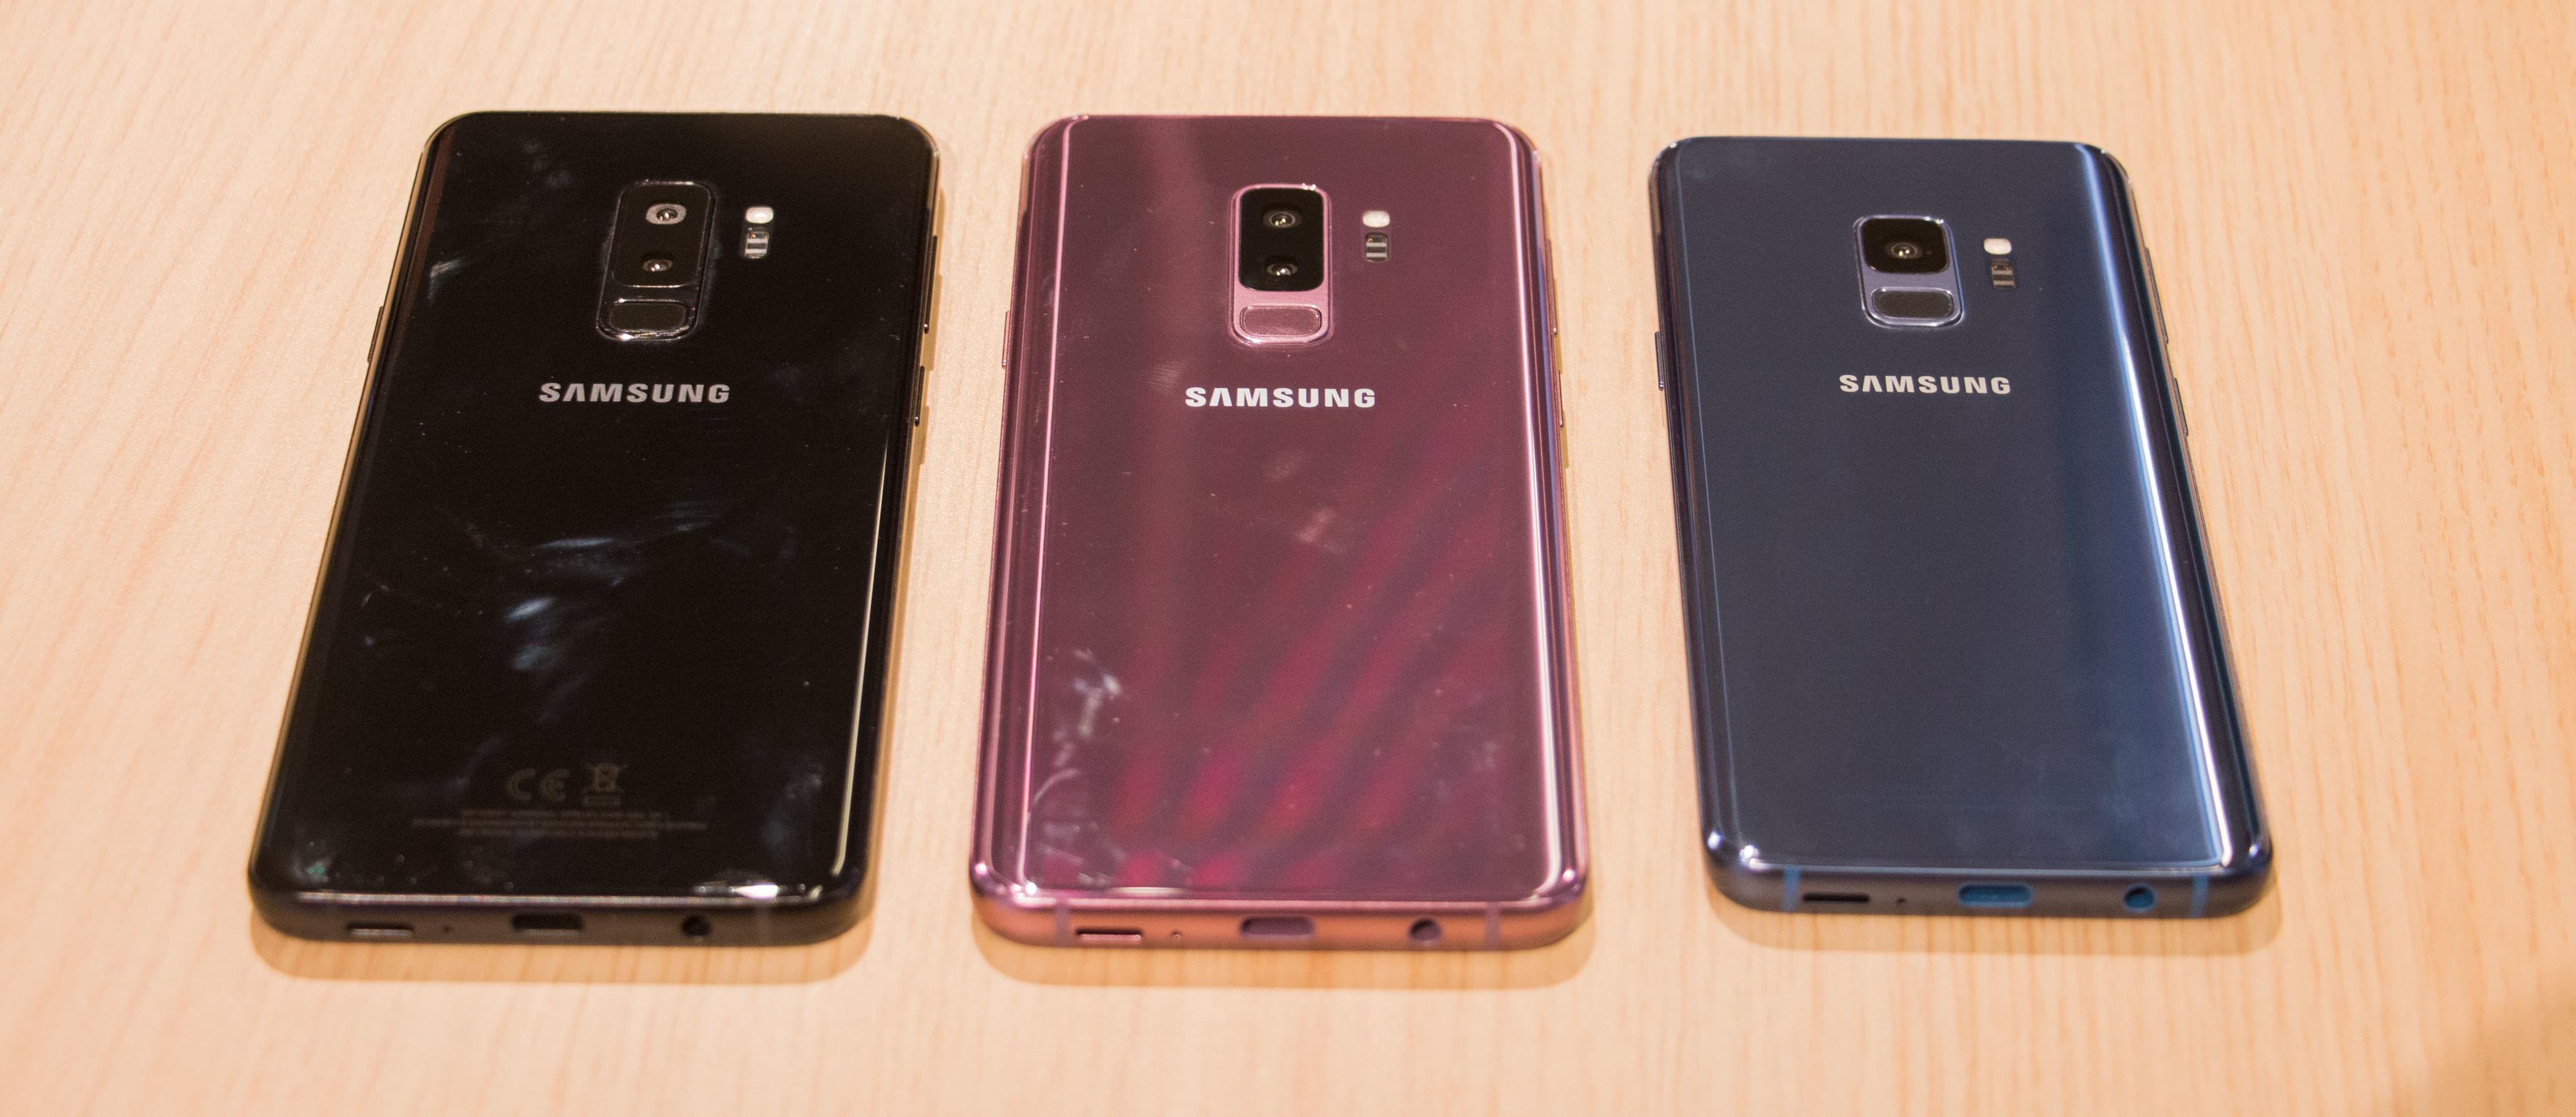 Her er de tre forskjellige fargene Galaxy S9-modellene kommer i.